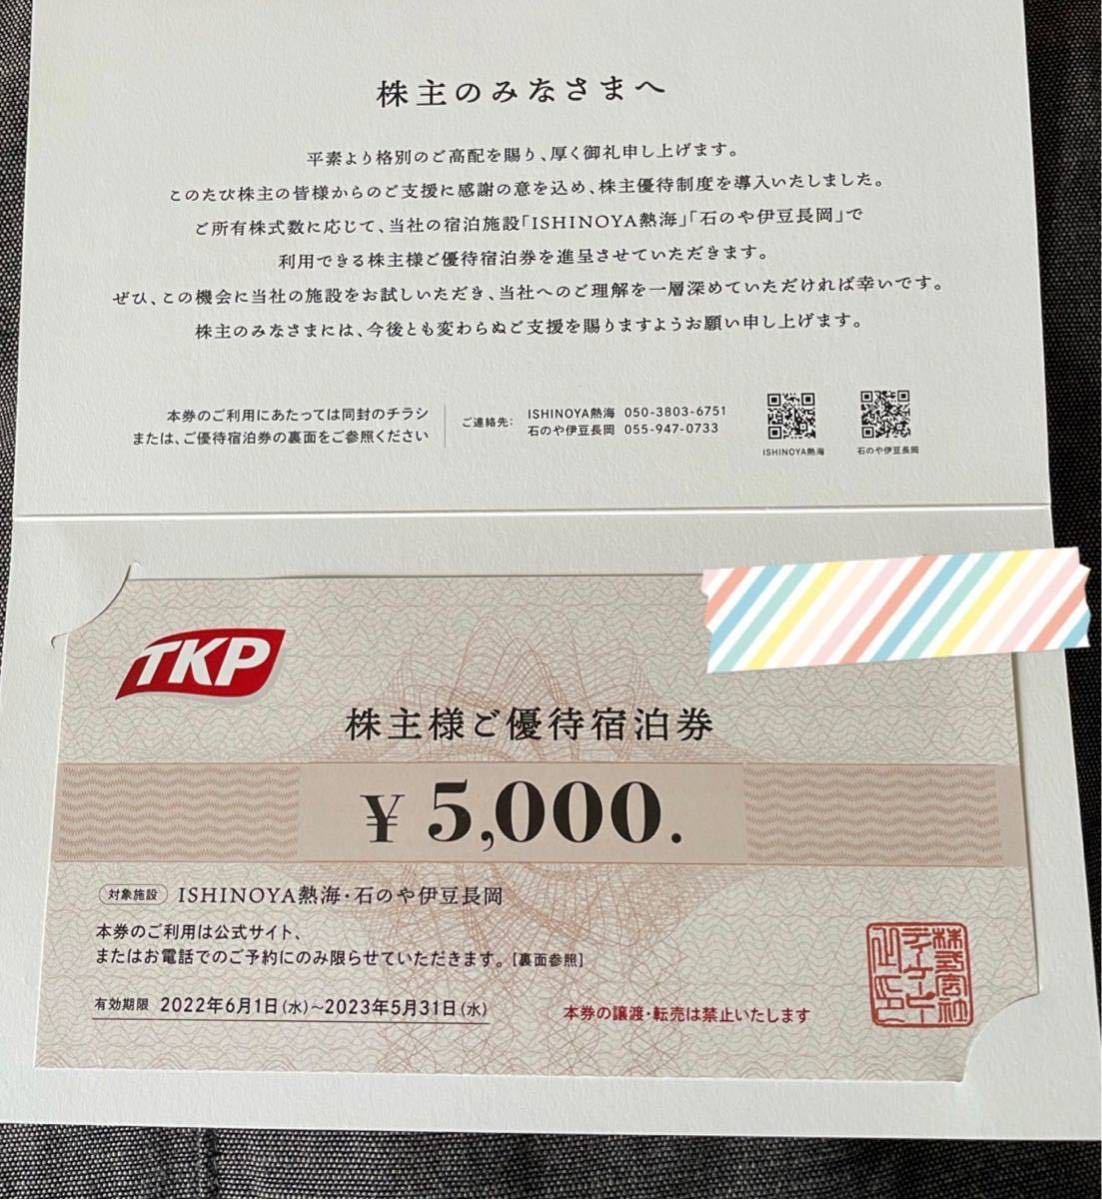 専門店では TKP 株主優待宿泊券 5000円分 ISHINOYA熱海 石のや伊豆長岡